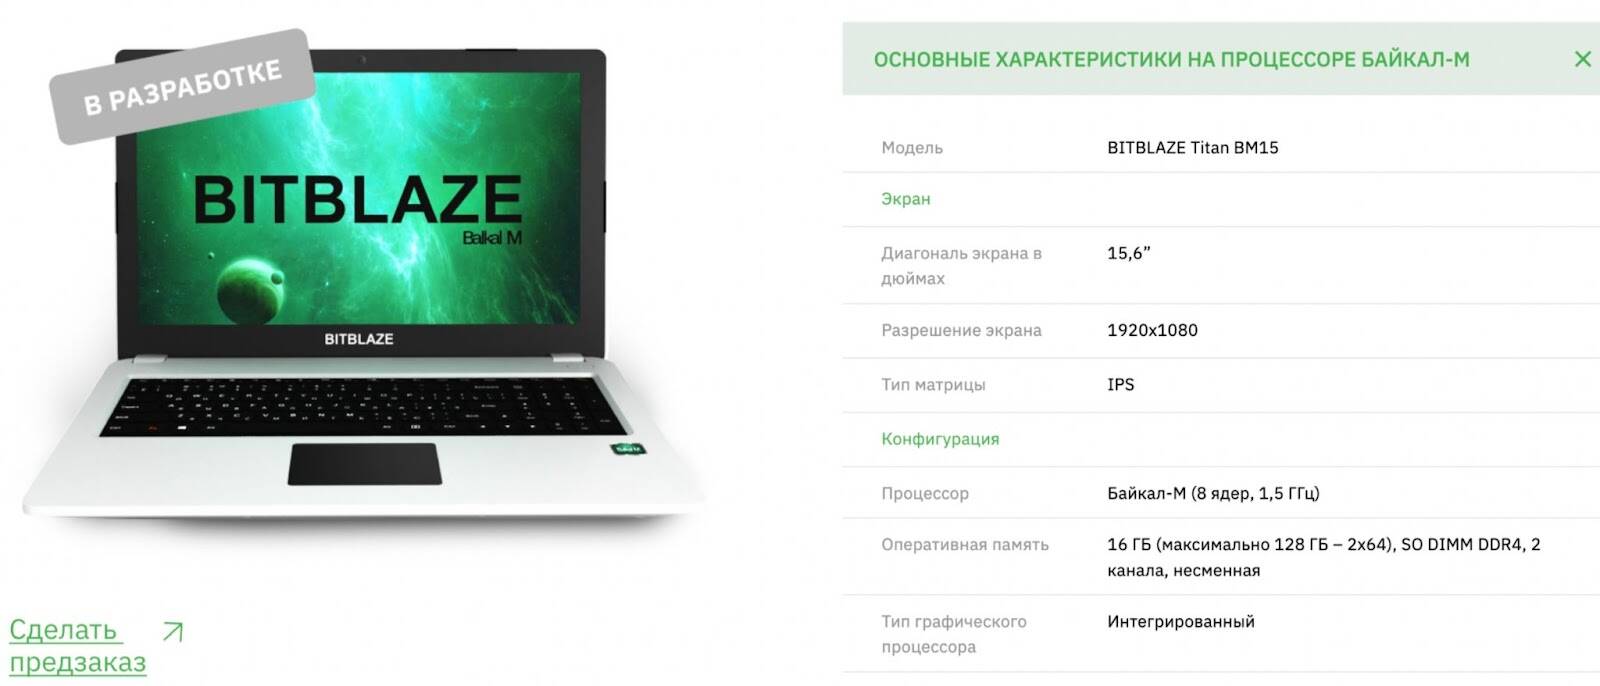 Подробнее о "Российский ноутбук с процессором «Байкал-М» запустят в производство"